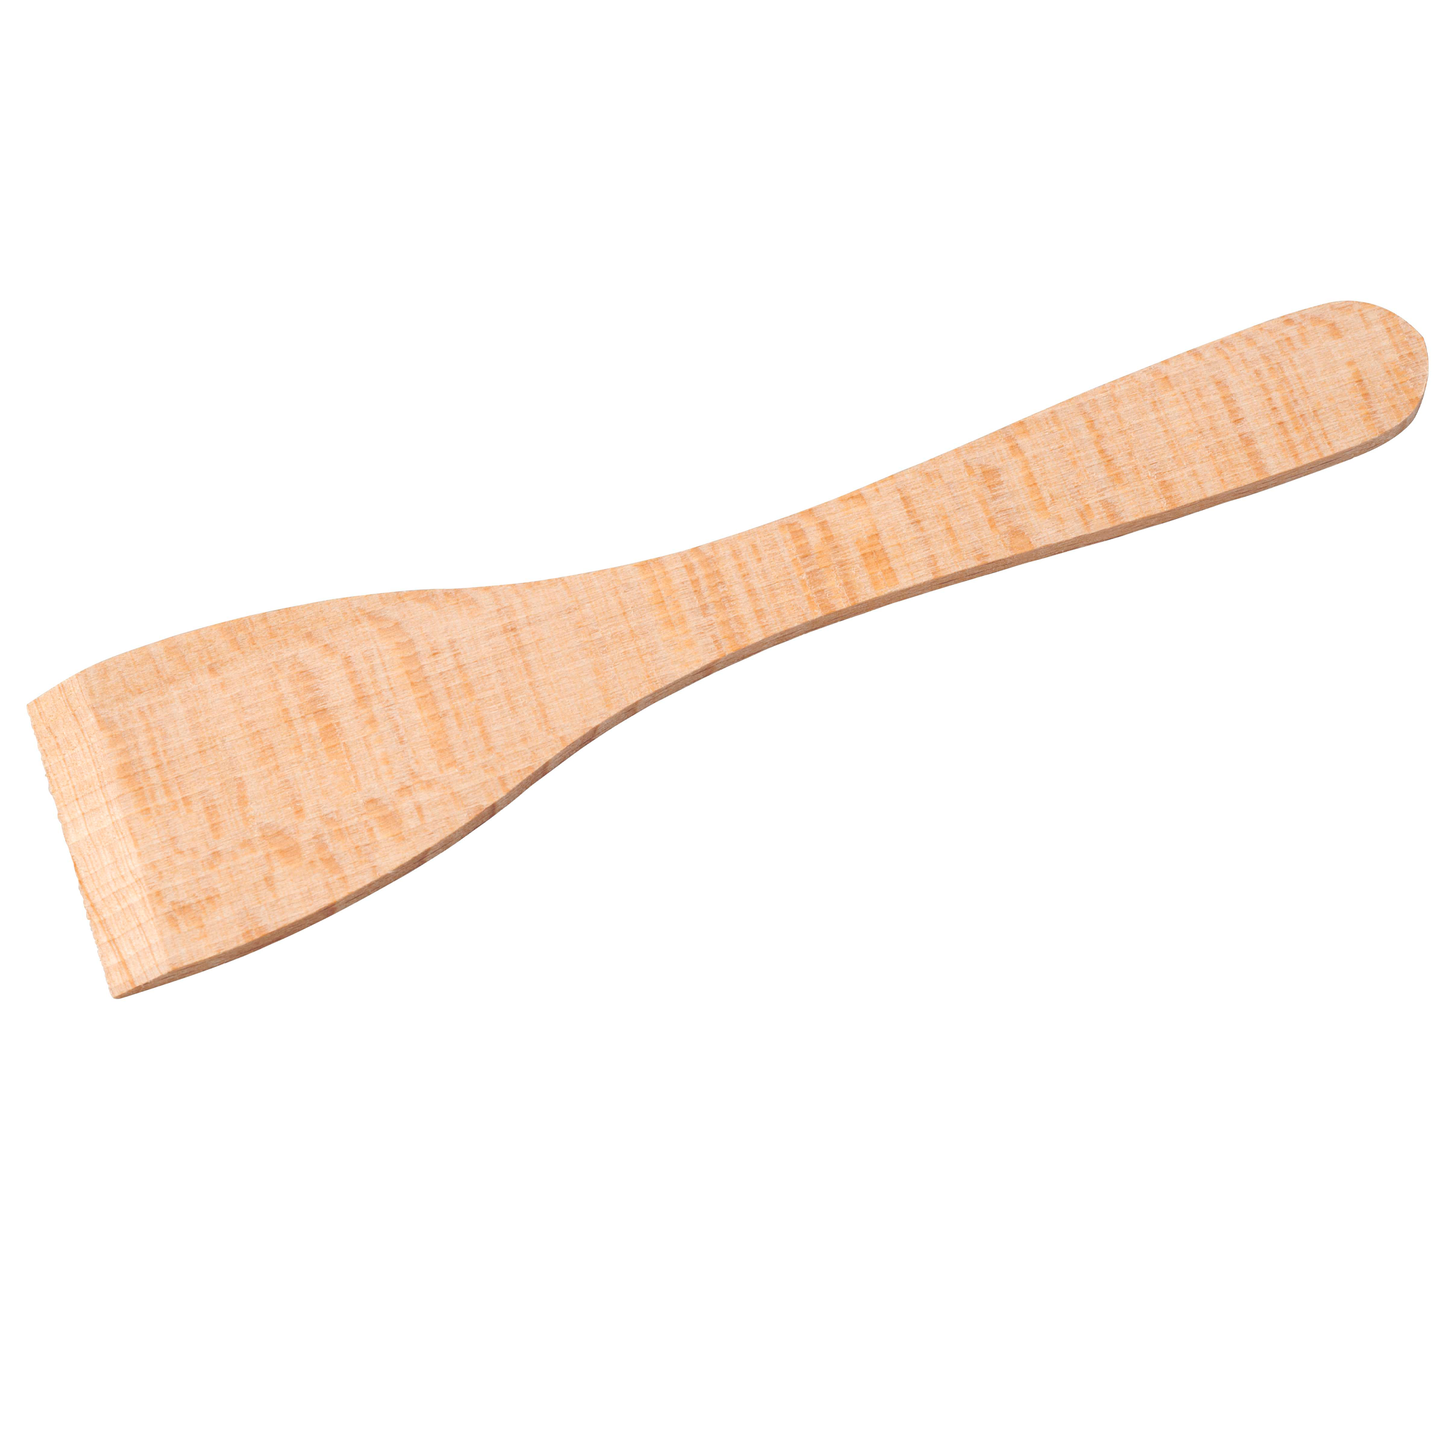 Wooden spatula - Nienhuis AMI